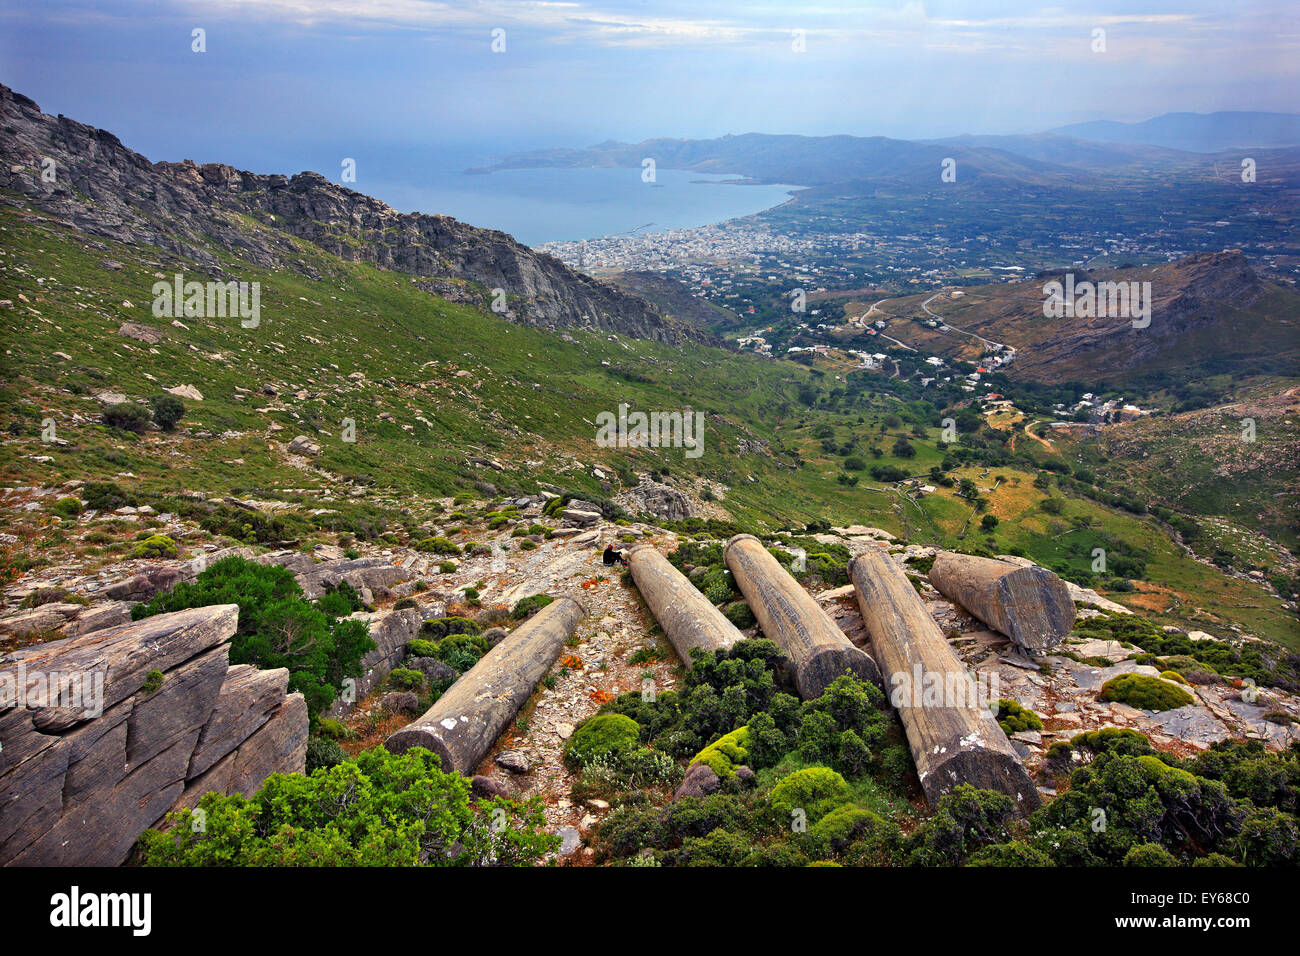 Vergessen antike Säulen in einem alten Steinbruch an den Hängen des Mount Ochi ("Oche"), Insel Evia ("Evvoia"), Zentral-Griechenland. Stockfoto